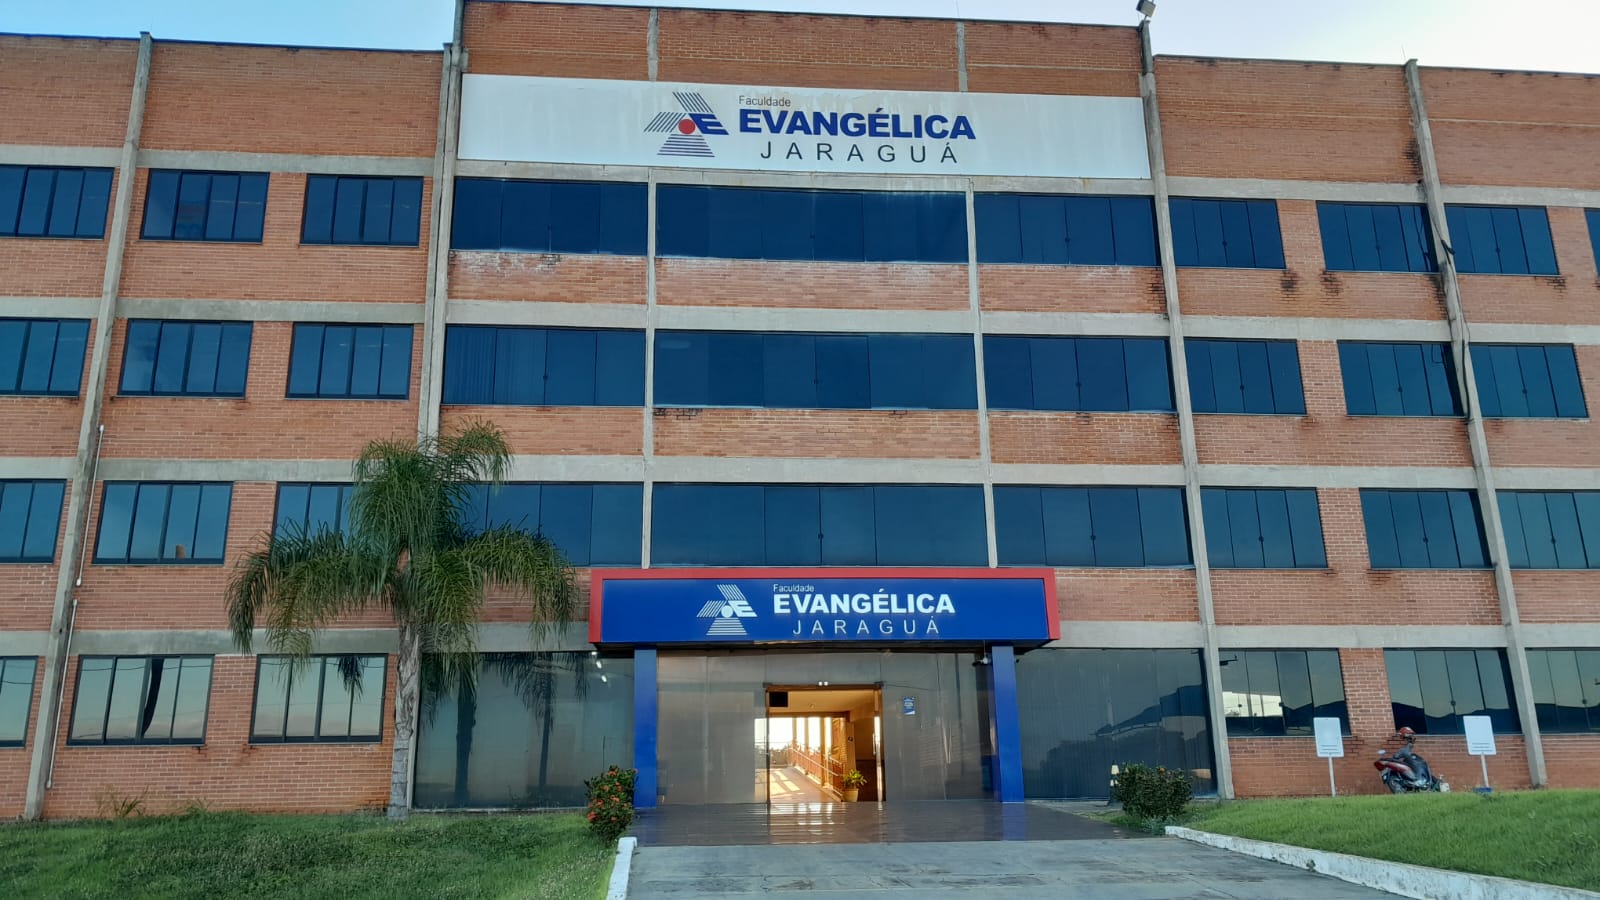 Hospital Evangélico Goiano